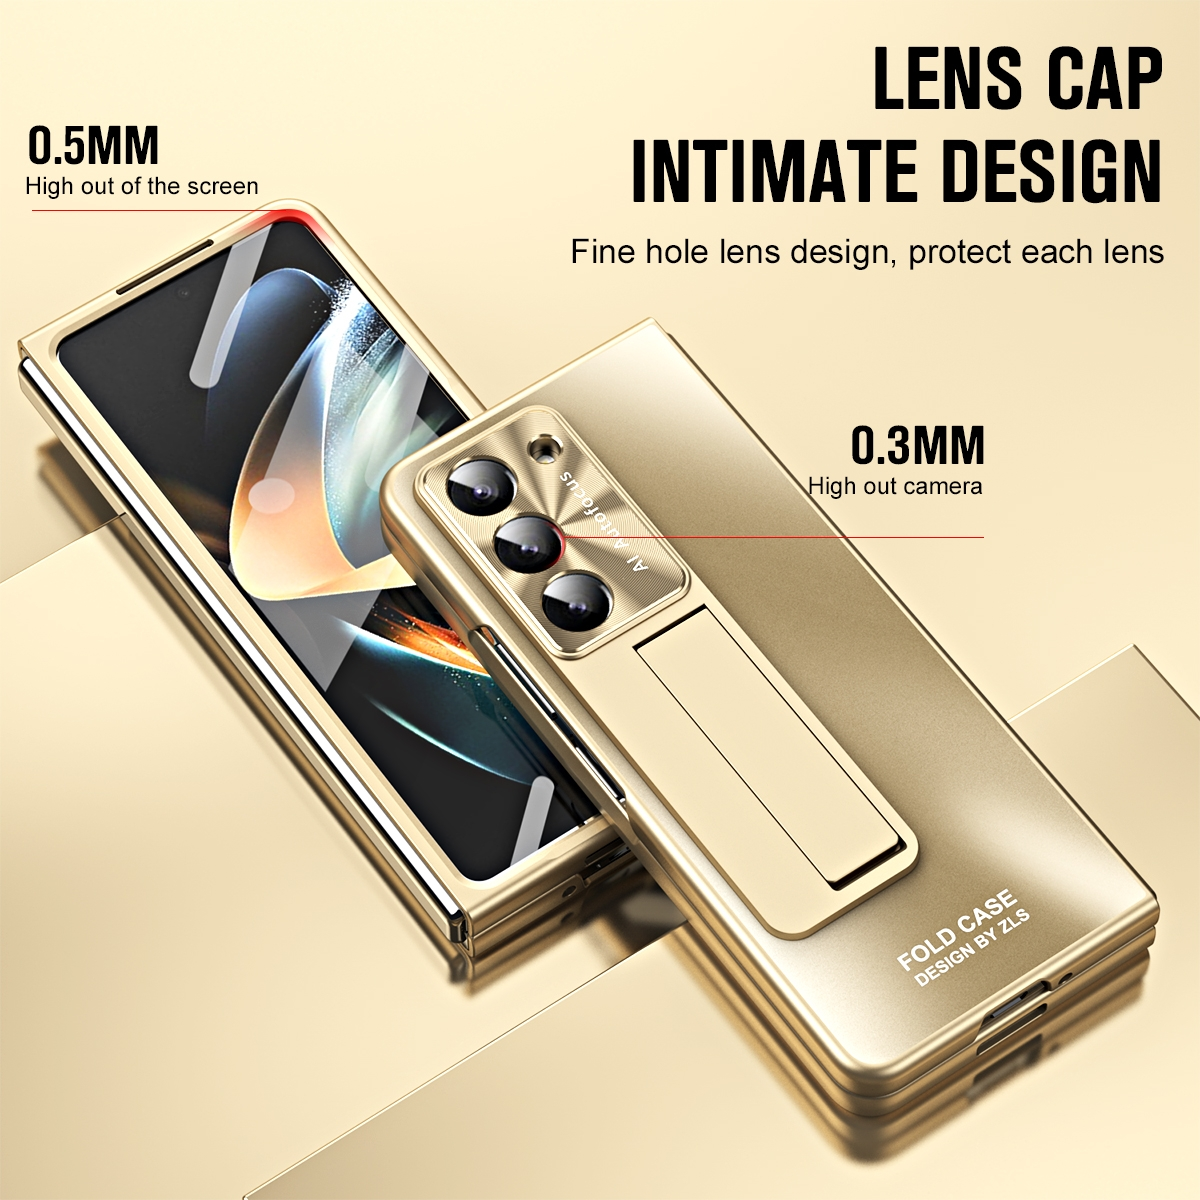 WIGENTO Design Premium Hülle mit Backcover, Fold5 Z Standhalterung, Samsung, Galaxy 5G, Gold